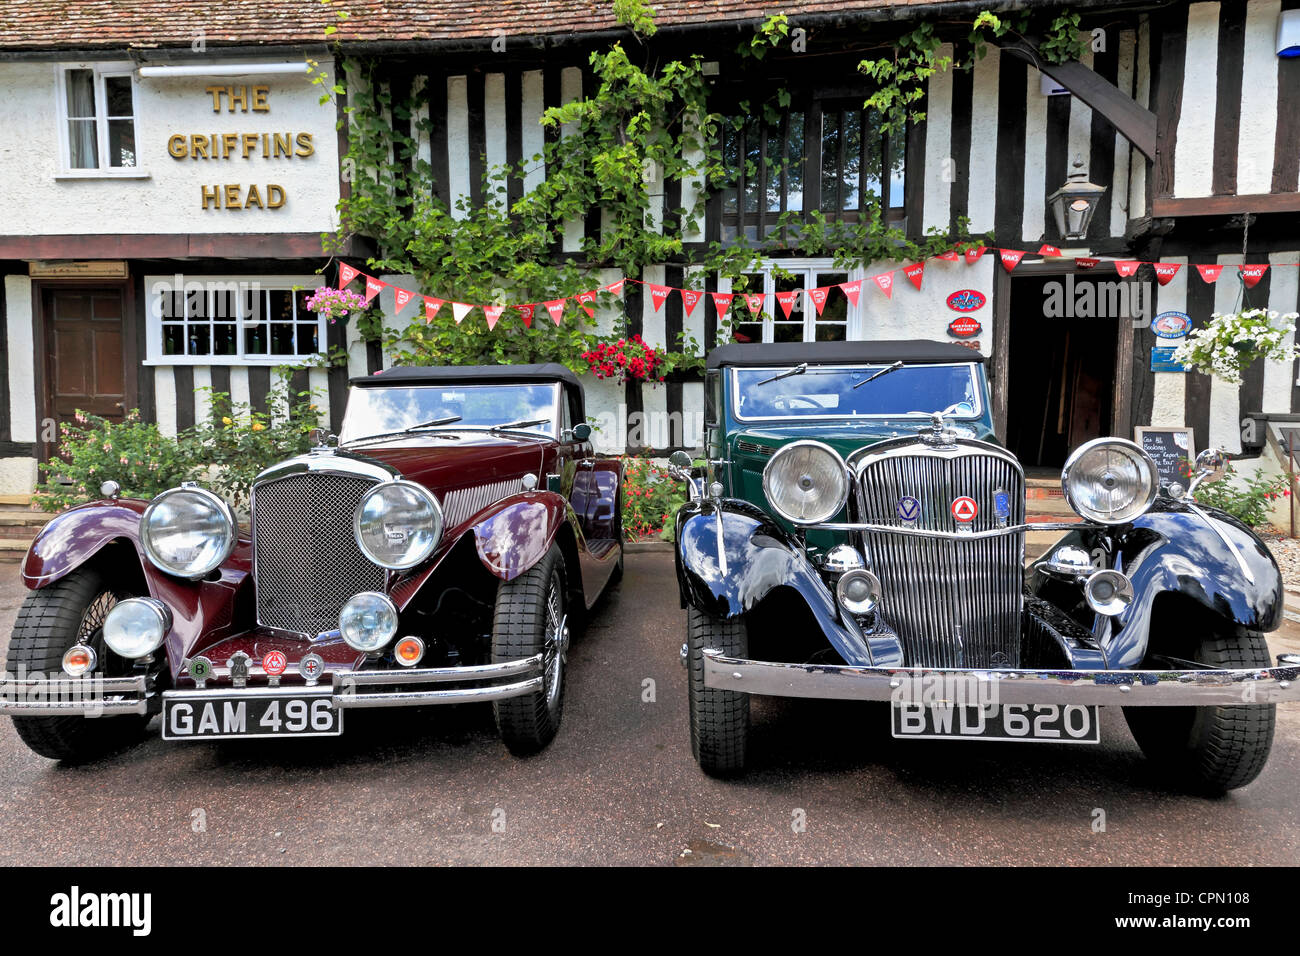 3997. Bentley speciale (sinistra) & Brough Superior al Griffin, Testa Chillenden, Kent, Regno Unito Foto Stock